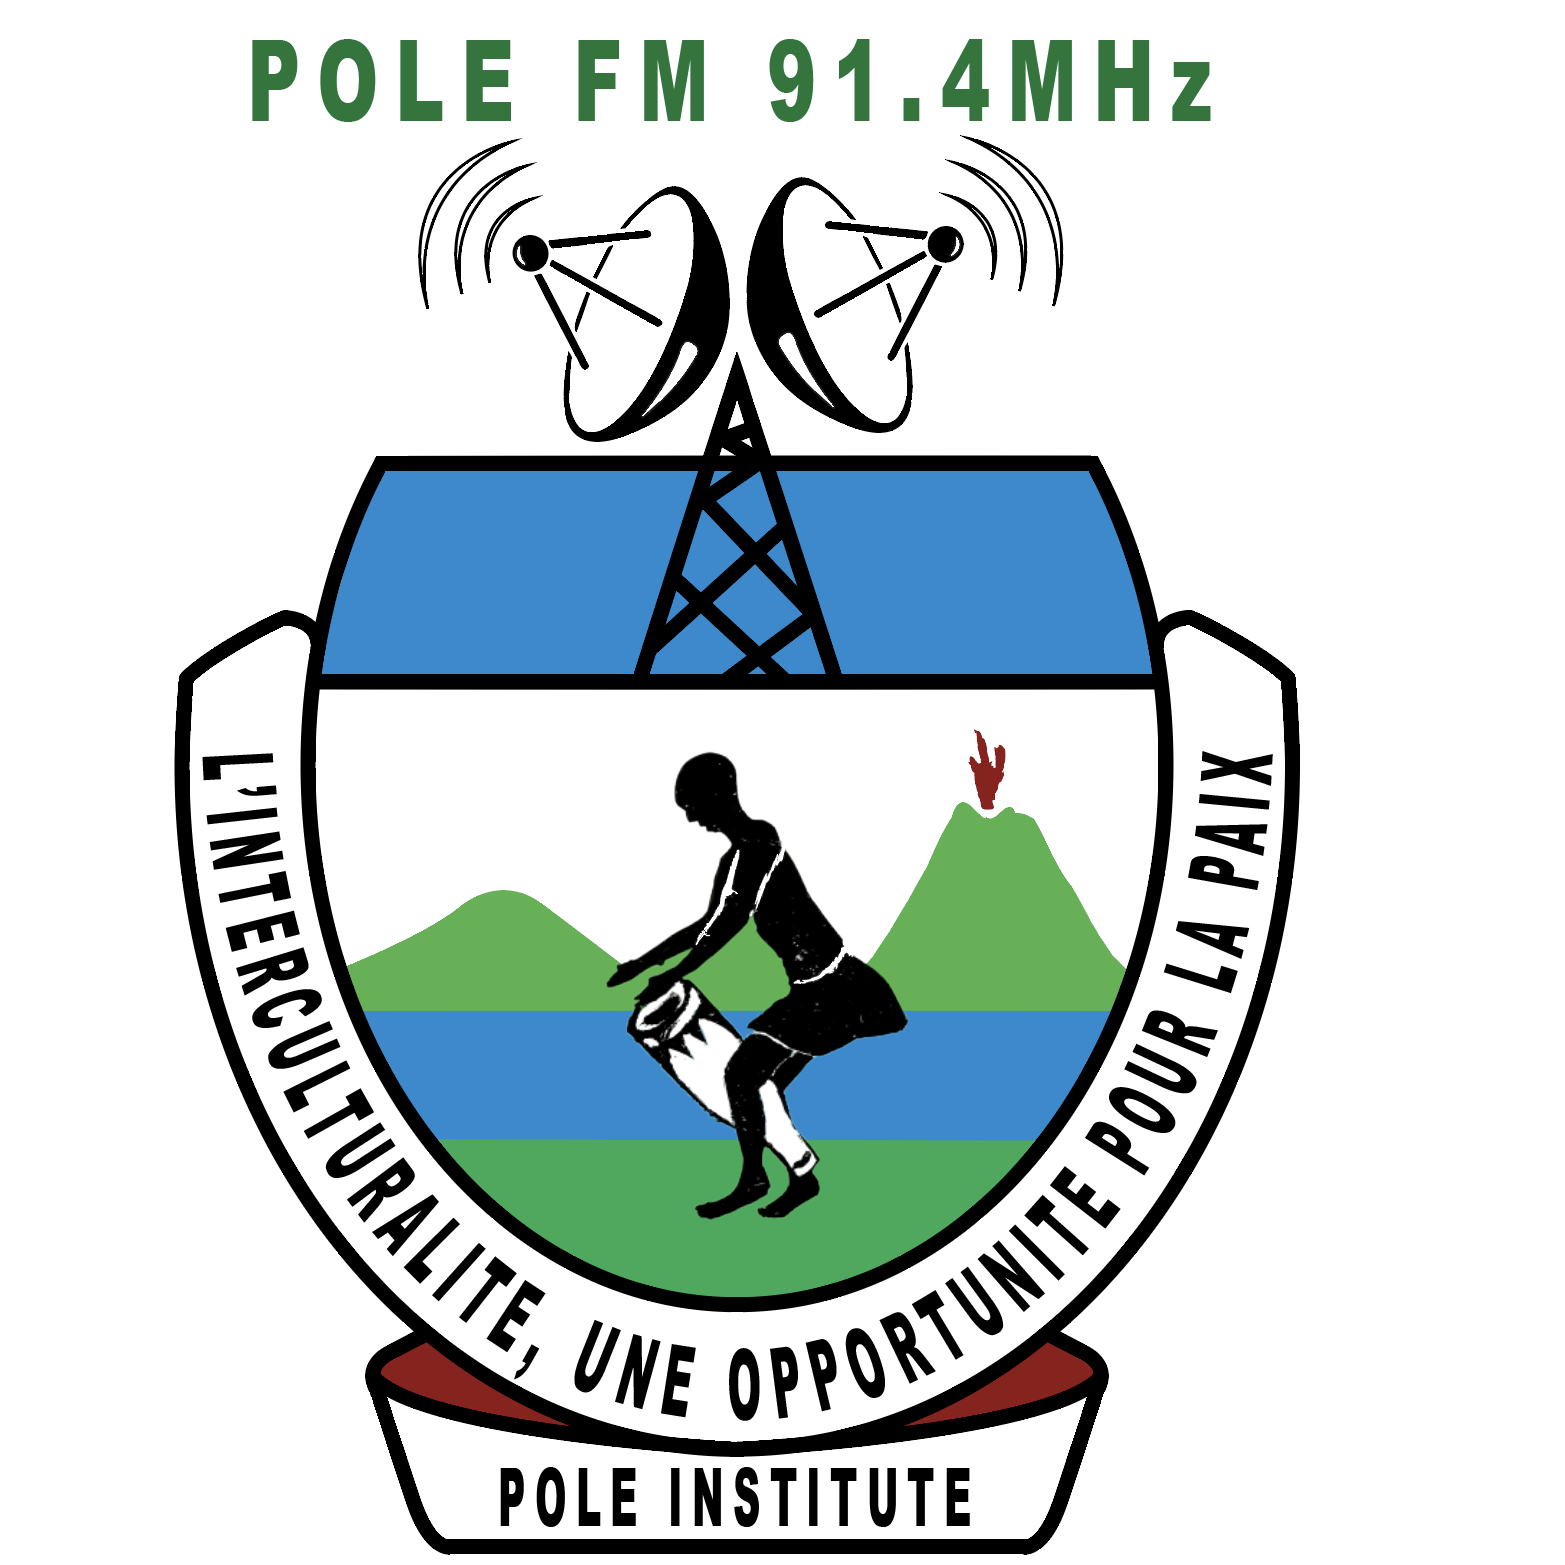 Pole FM 91.4 MHz